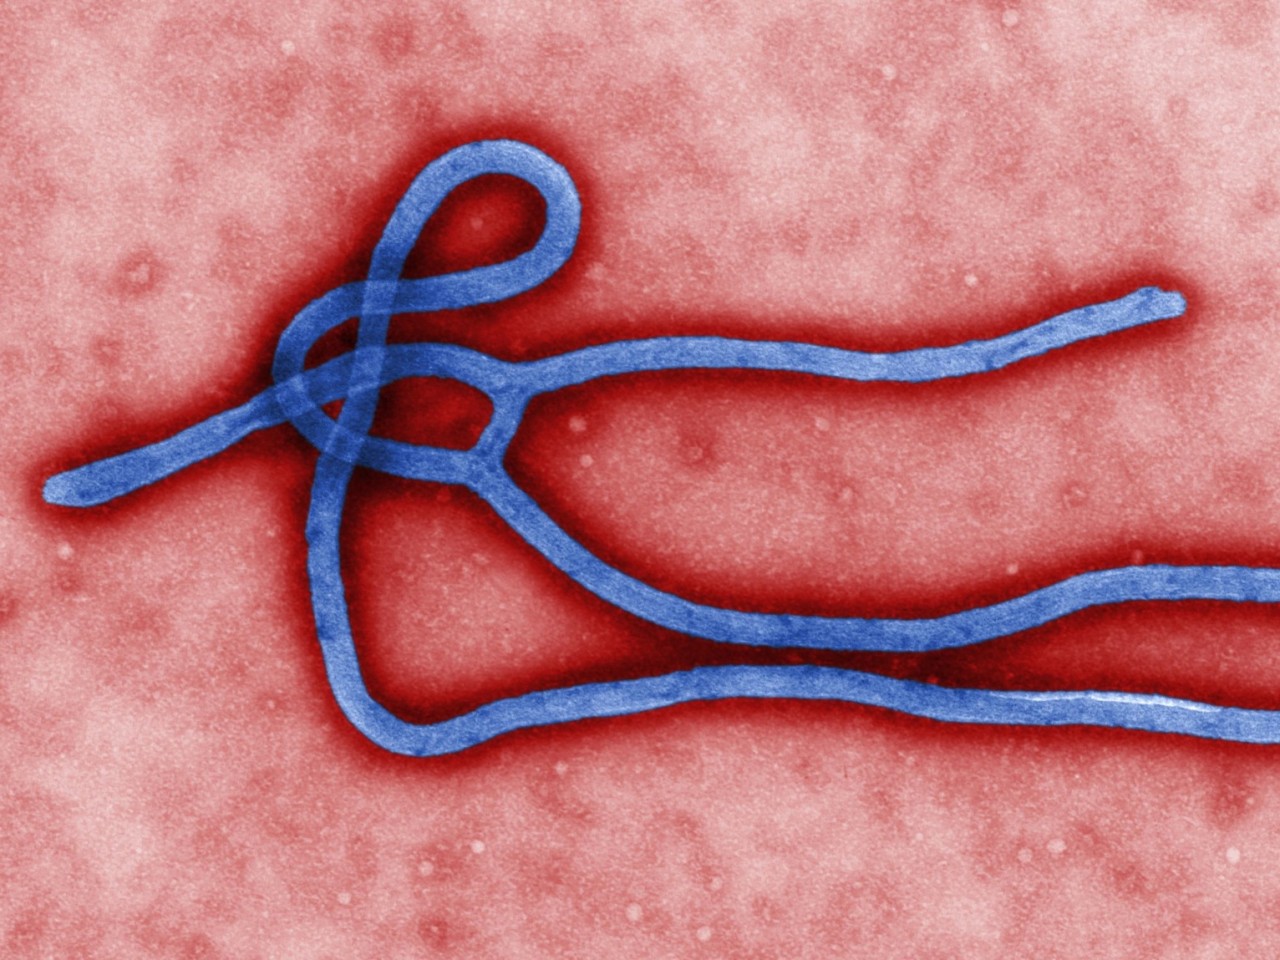 ebola-1280x960